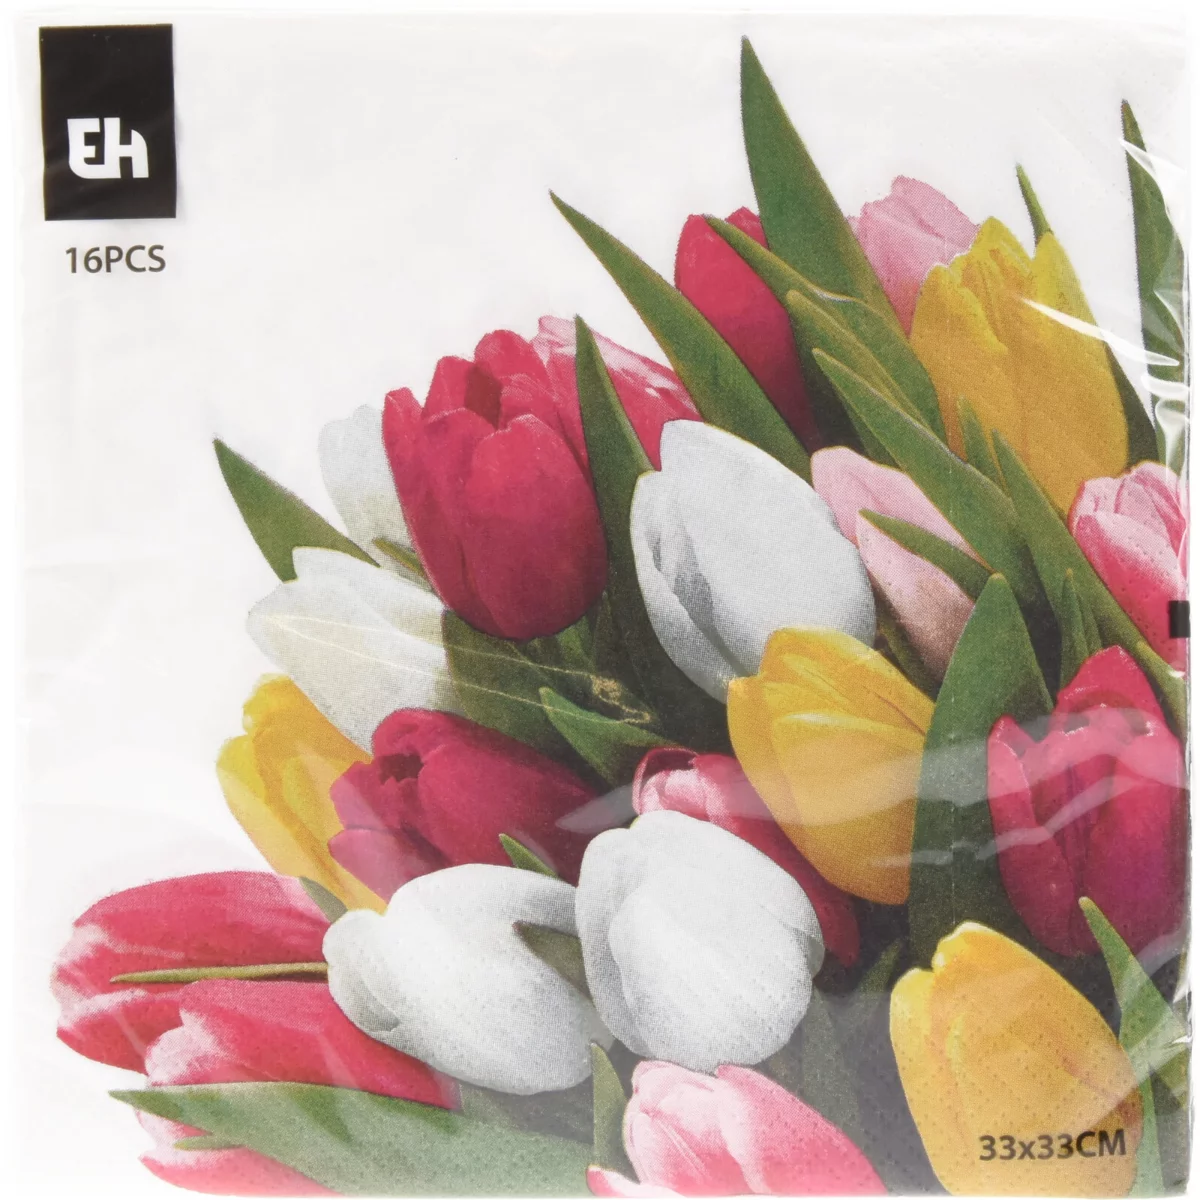 Tavaszi szalvéta 3 rétegű 16 db 33x33cm - Színes tulipánok